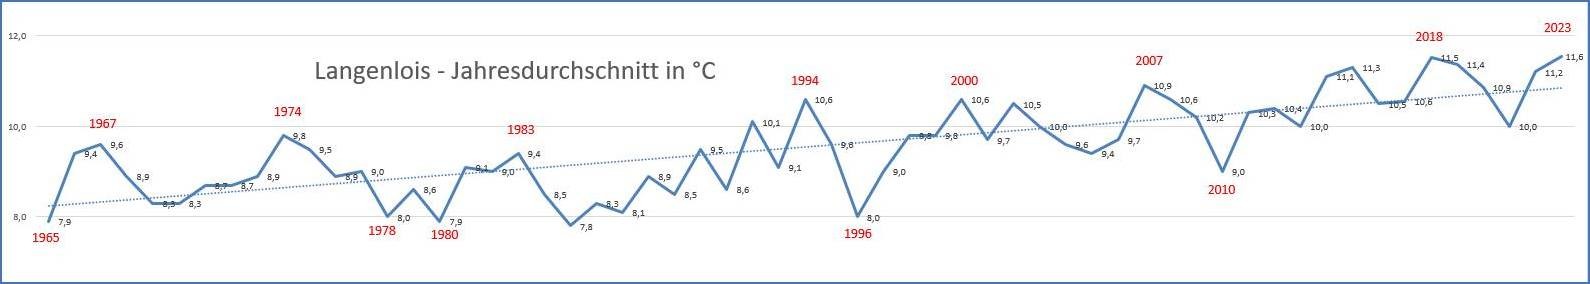 Grafik der Jahresdurchschnittstemperatur von Langenlois 1965 bis 2023:  Auch in Langenlois lässt sich die Klimaerwärmung nicht leugnen (Trendlinie lag 1965 knapp über 8°C, jetzt sind wir bei fast 11°C)